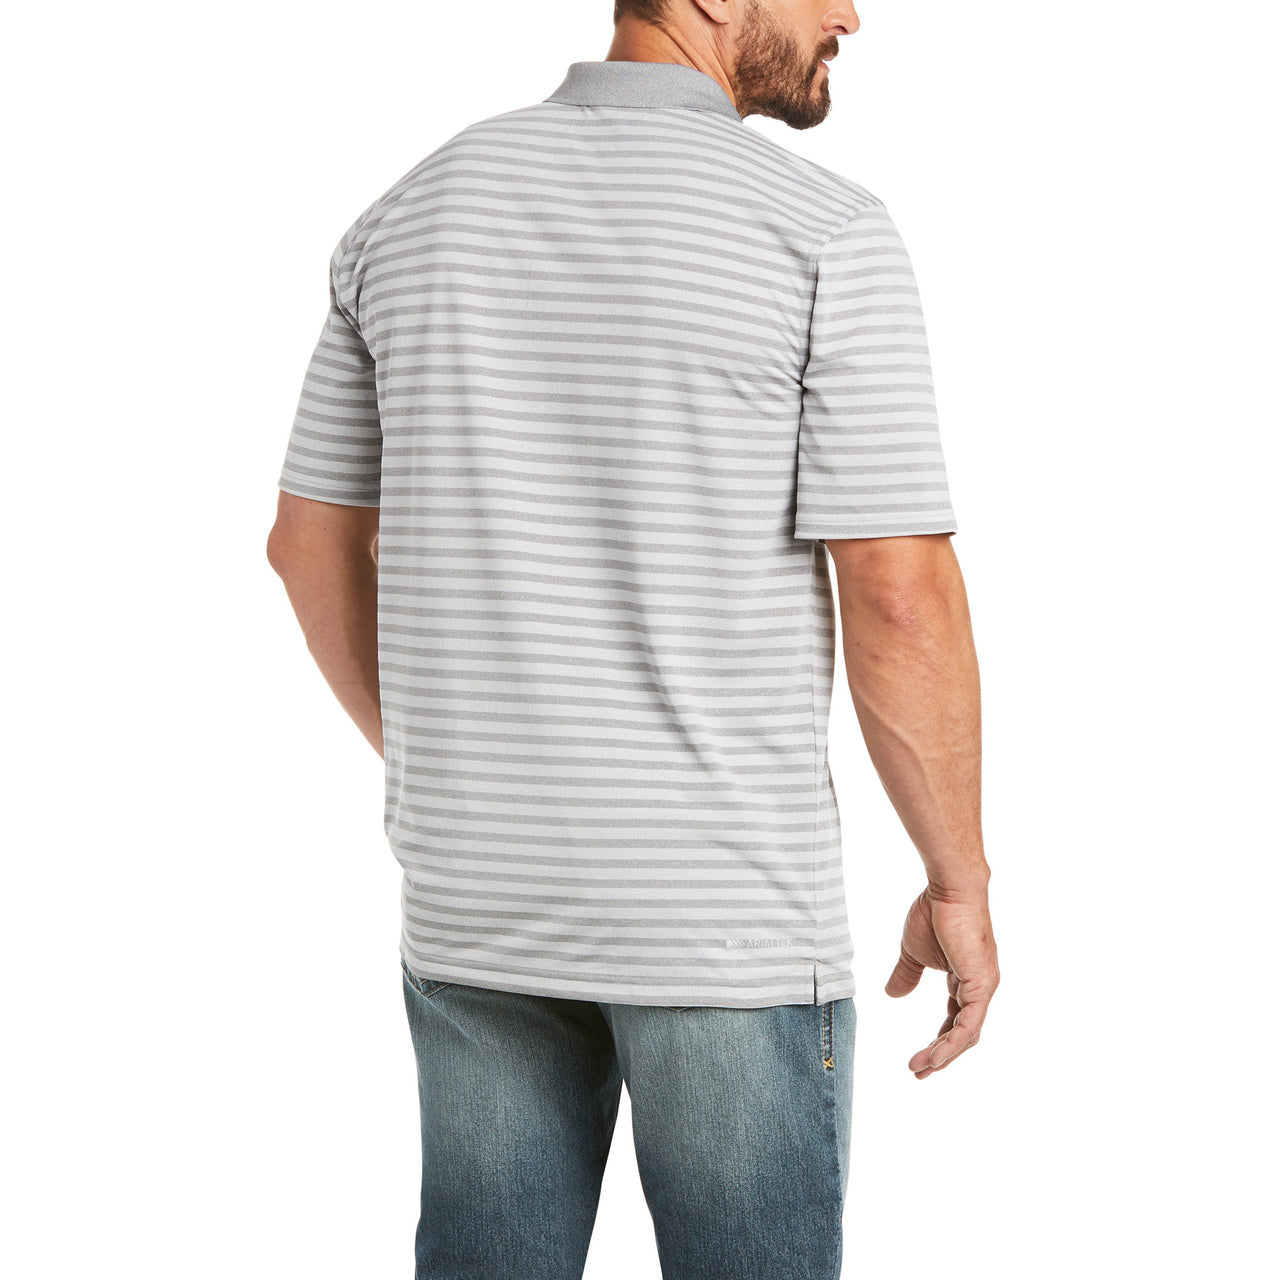 Ariat Men's Performance Melange Stripe Sharkskin Polo Shirt 10035369